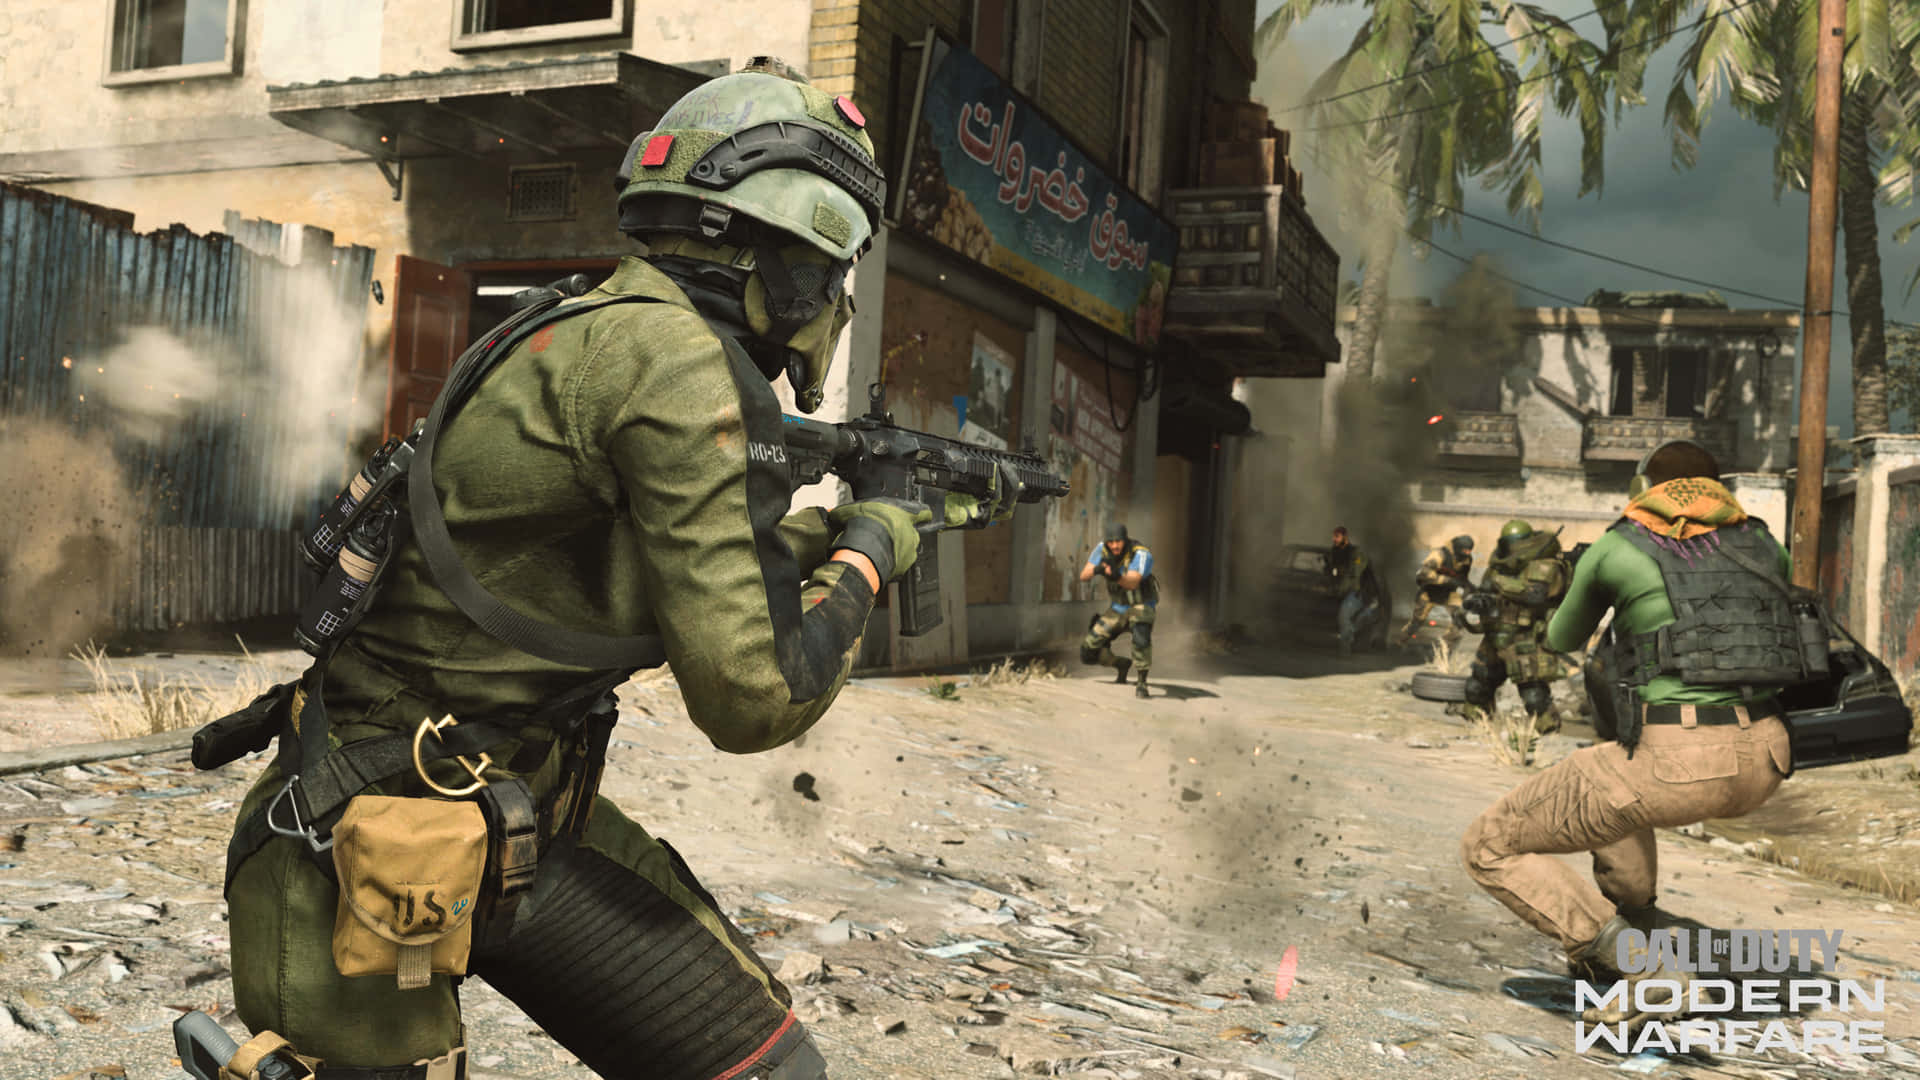 Ensoldat Förbereder Sig För Strid I Call Of Duty: Modern Warfare.